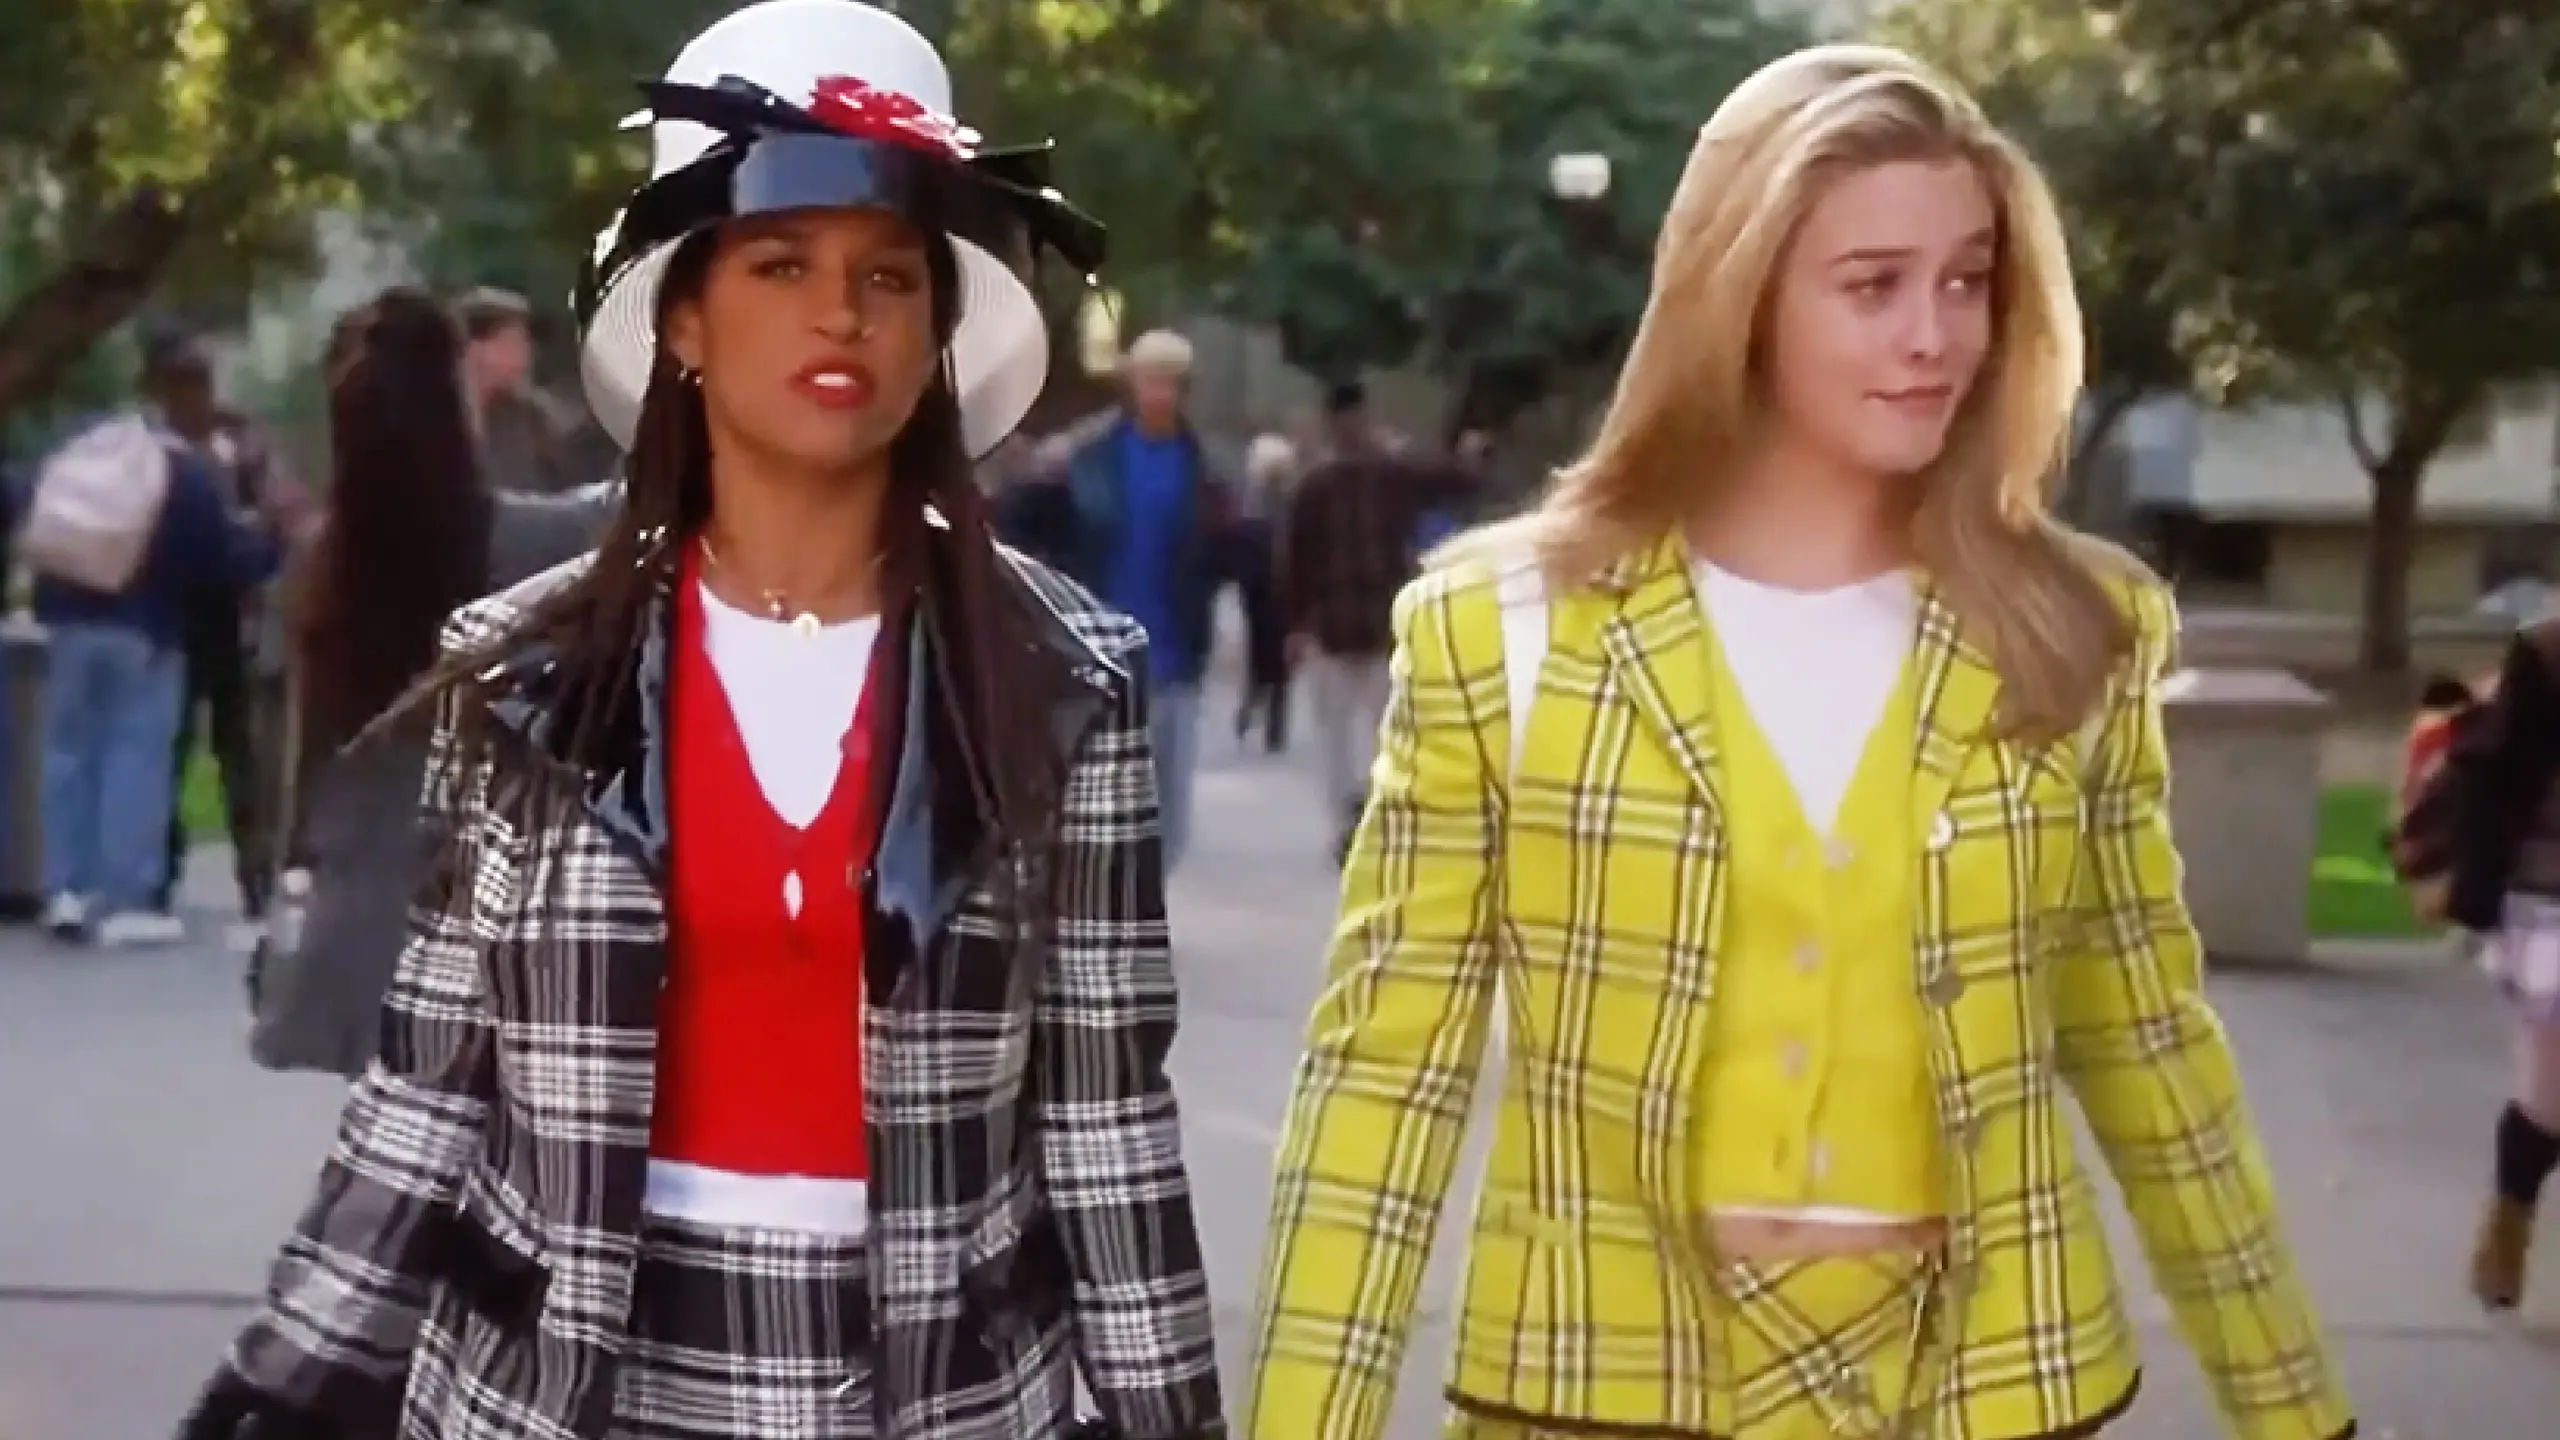 Dionne Davenport (Stacey Dash) und Cher Horowitz (Alicia Silverstone) prägten in der Teenager-Komödie „Clueless – Was sonst!“ (1995) nicht nur mit ihren schrillen Outfits, sondern auch mit etlichen Sprachausdrücken eine ganze Generation junger Leute